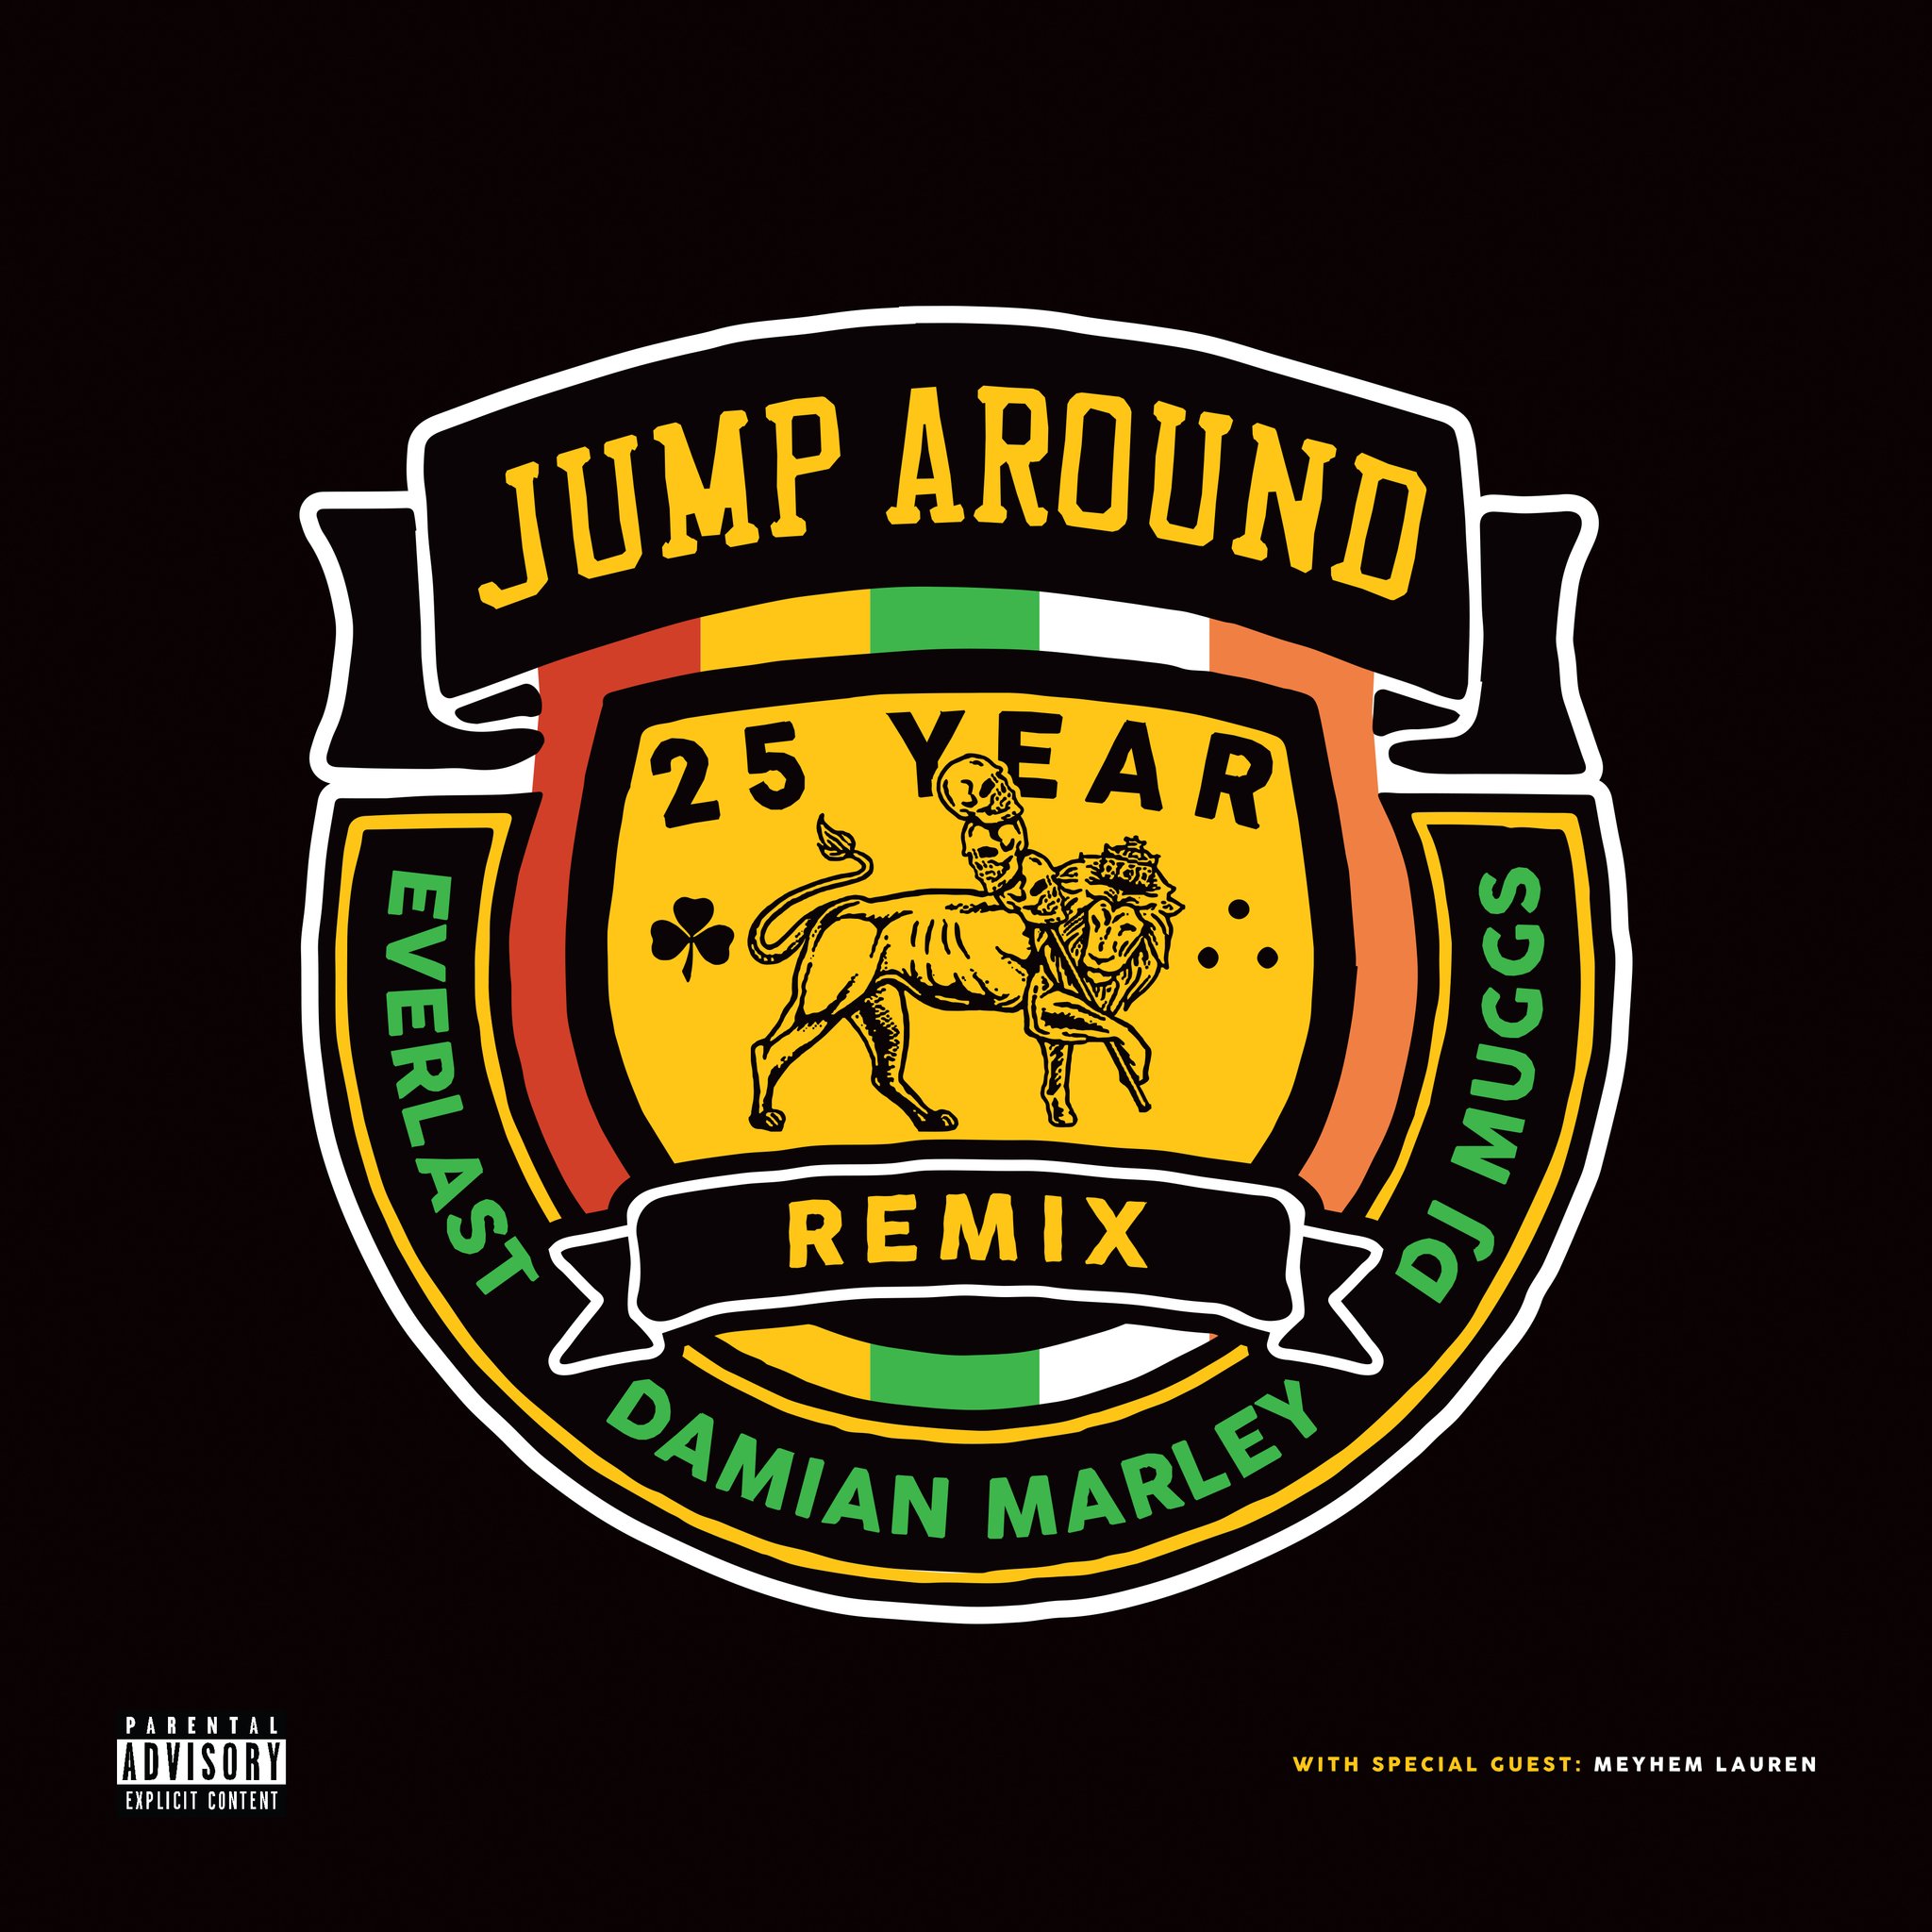 Jump_around__25th_anniversary_remix_